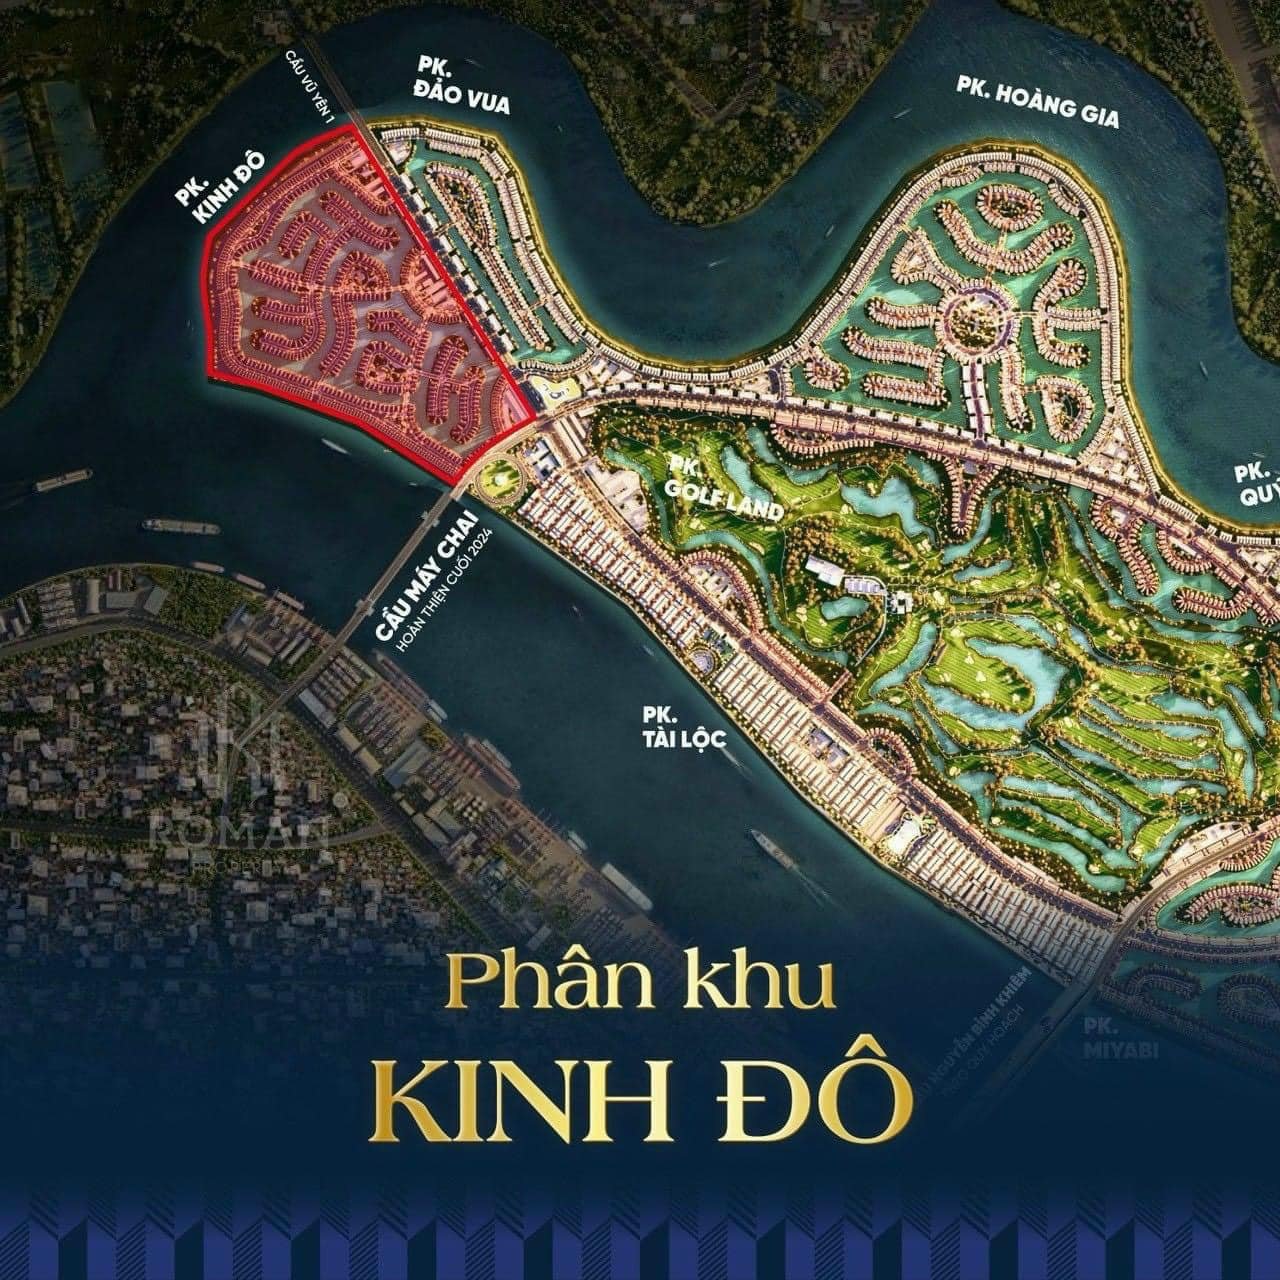 Phân khu Kinh Đô - Vinhomes Royal Island Vũ Yên, Hải Phòng